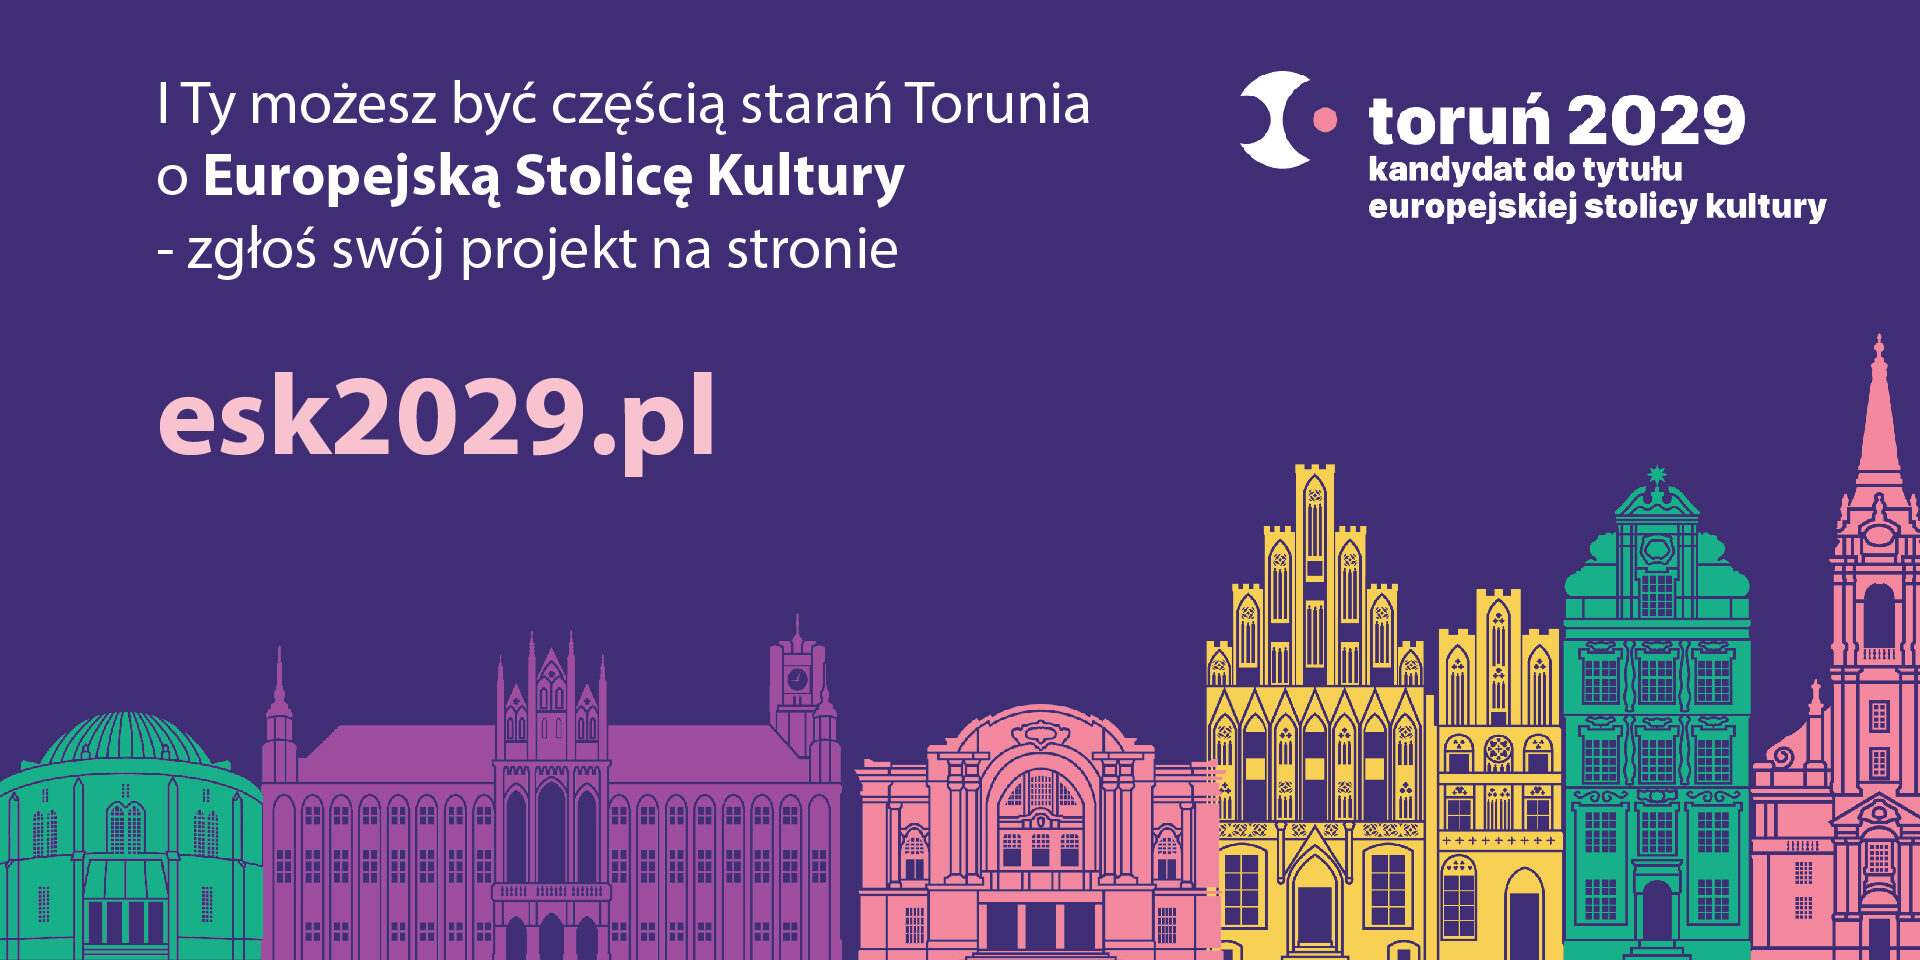 Toruń kandydatem do Europejskiej Stolicy Kultury 2029